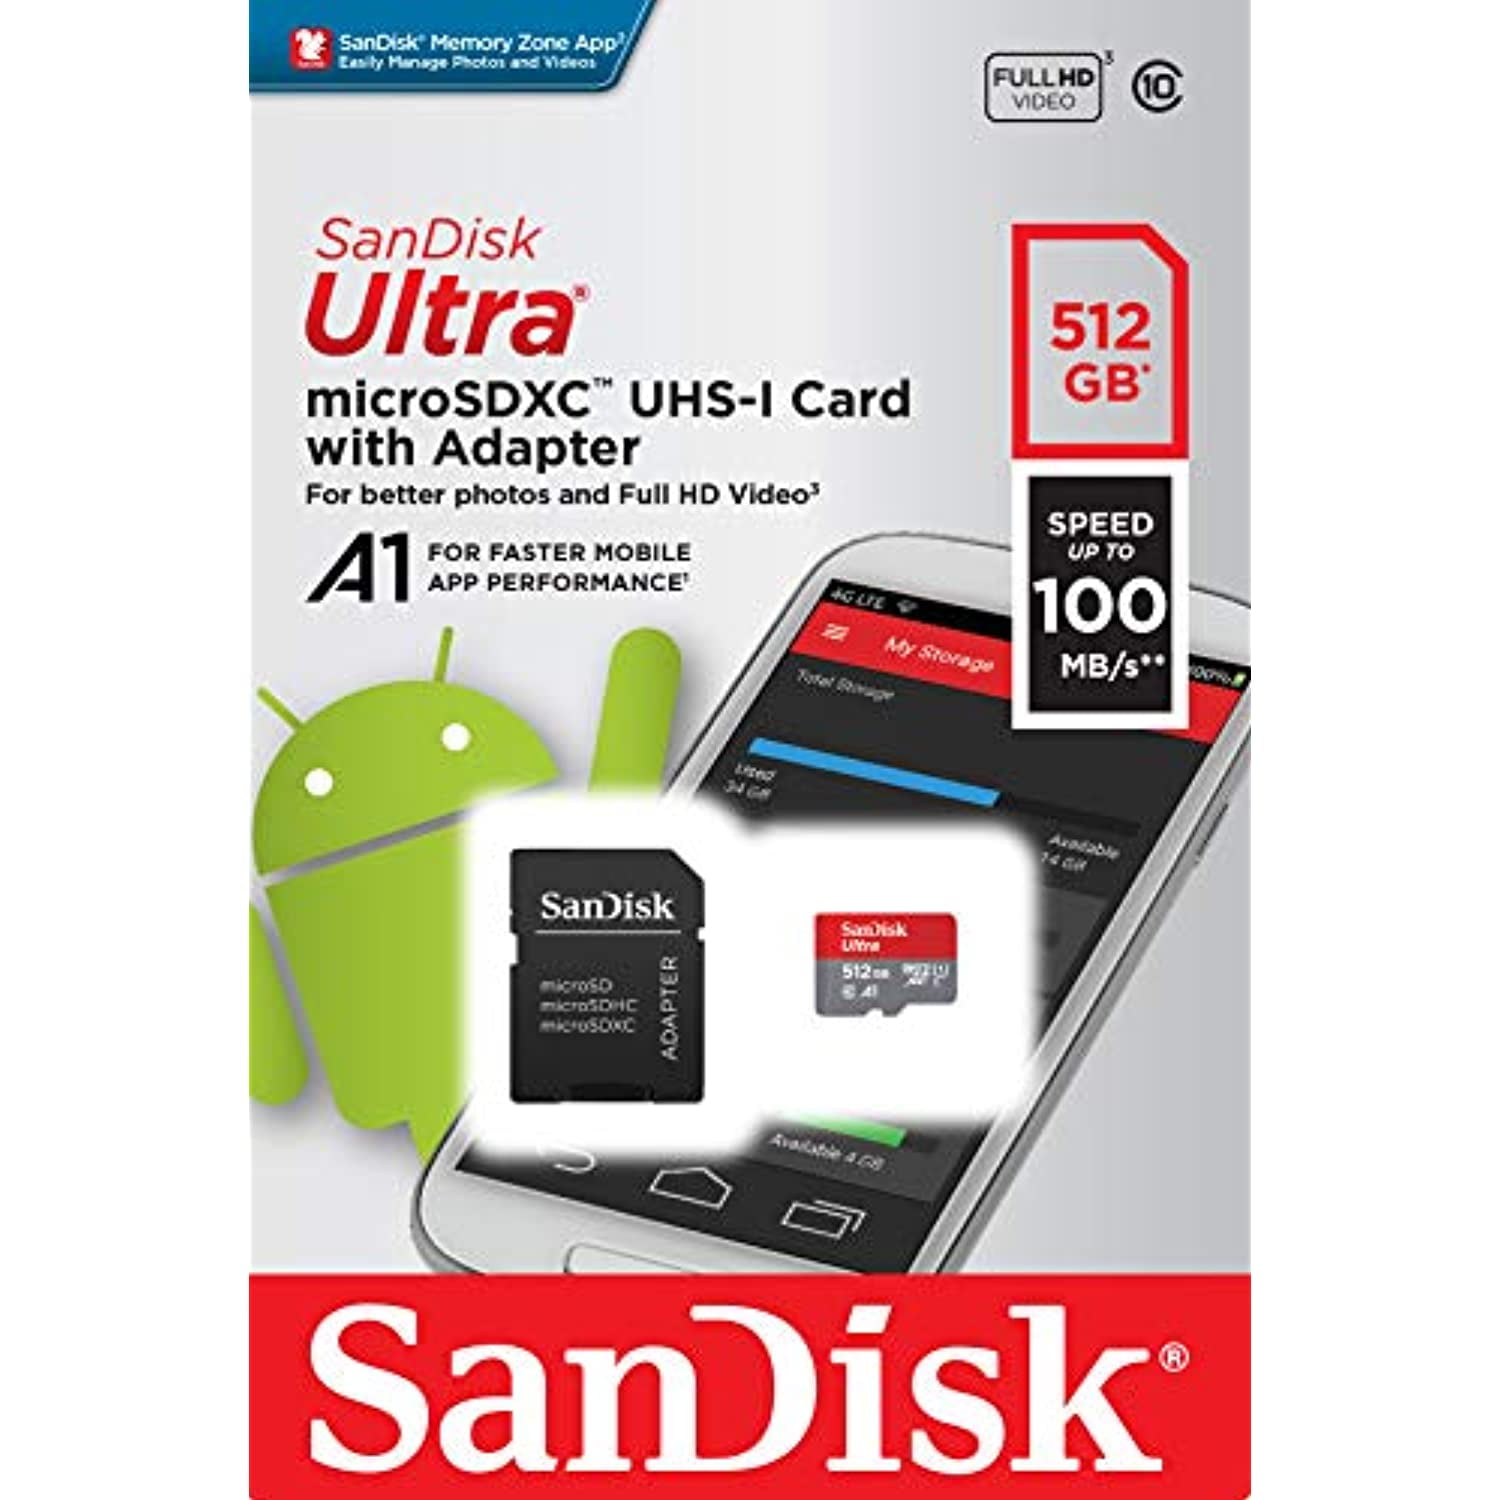 SanDisk サンディスク 512GB ULTRA microSDXC UHS-I card アダプタ付 SDSQUAR-512G  5KQ6JA6gis, メモリーカード